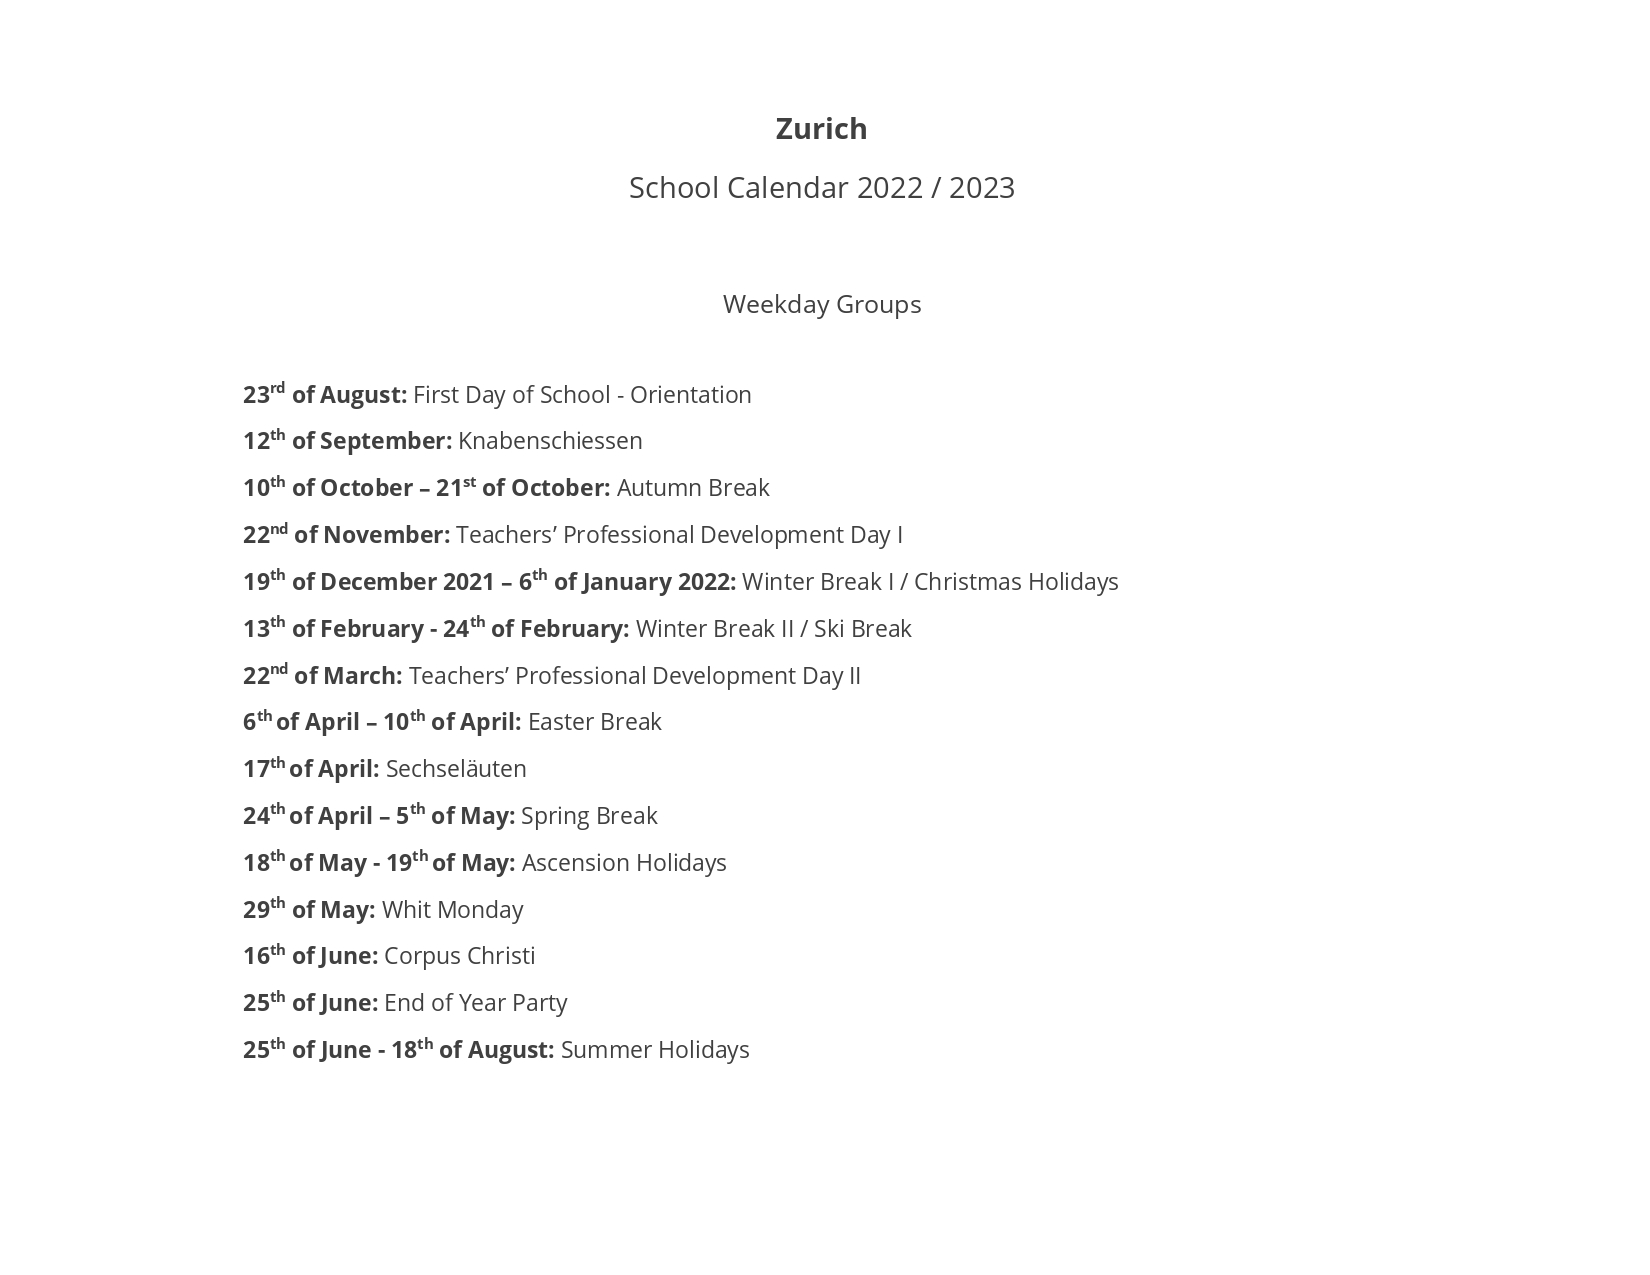 School Calendar Zurich 2022 2023 page 0001